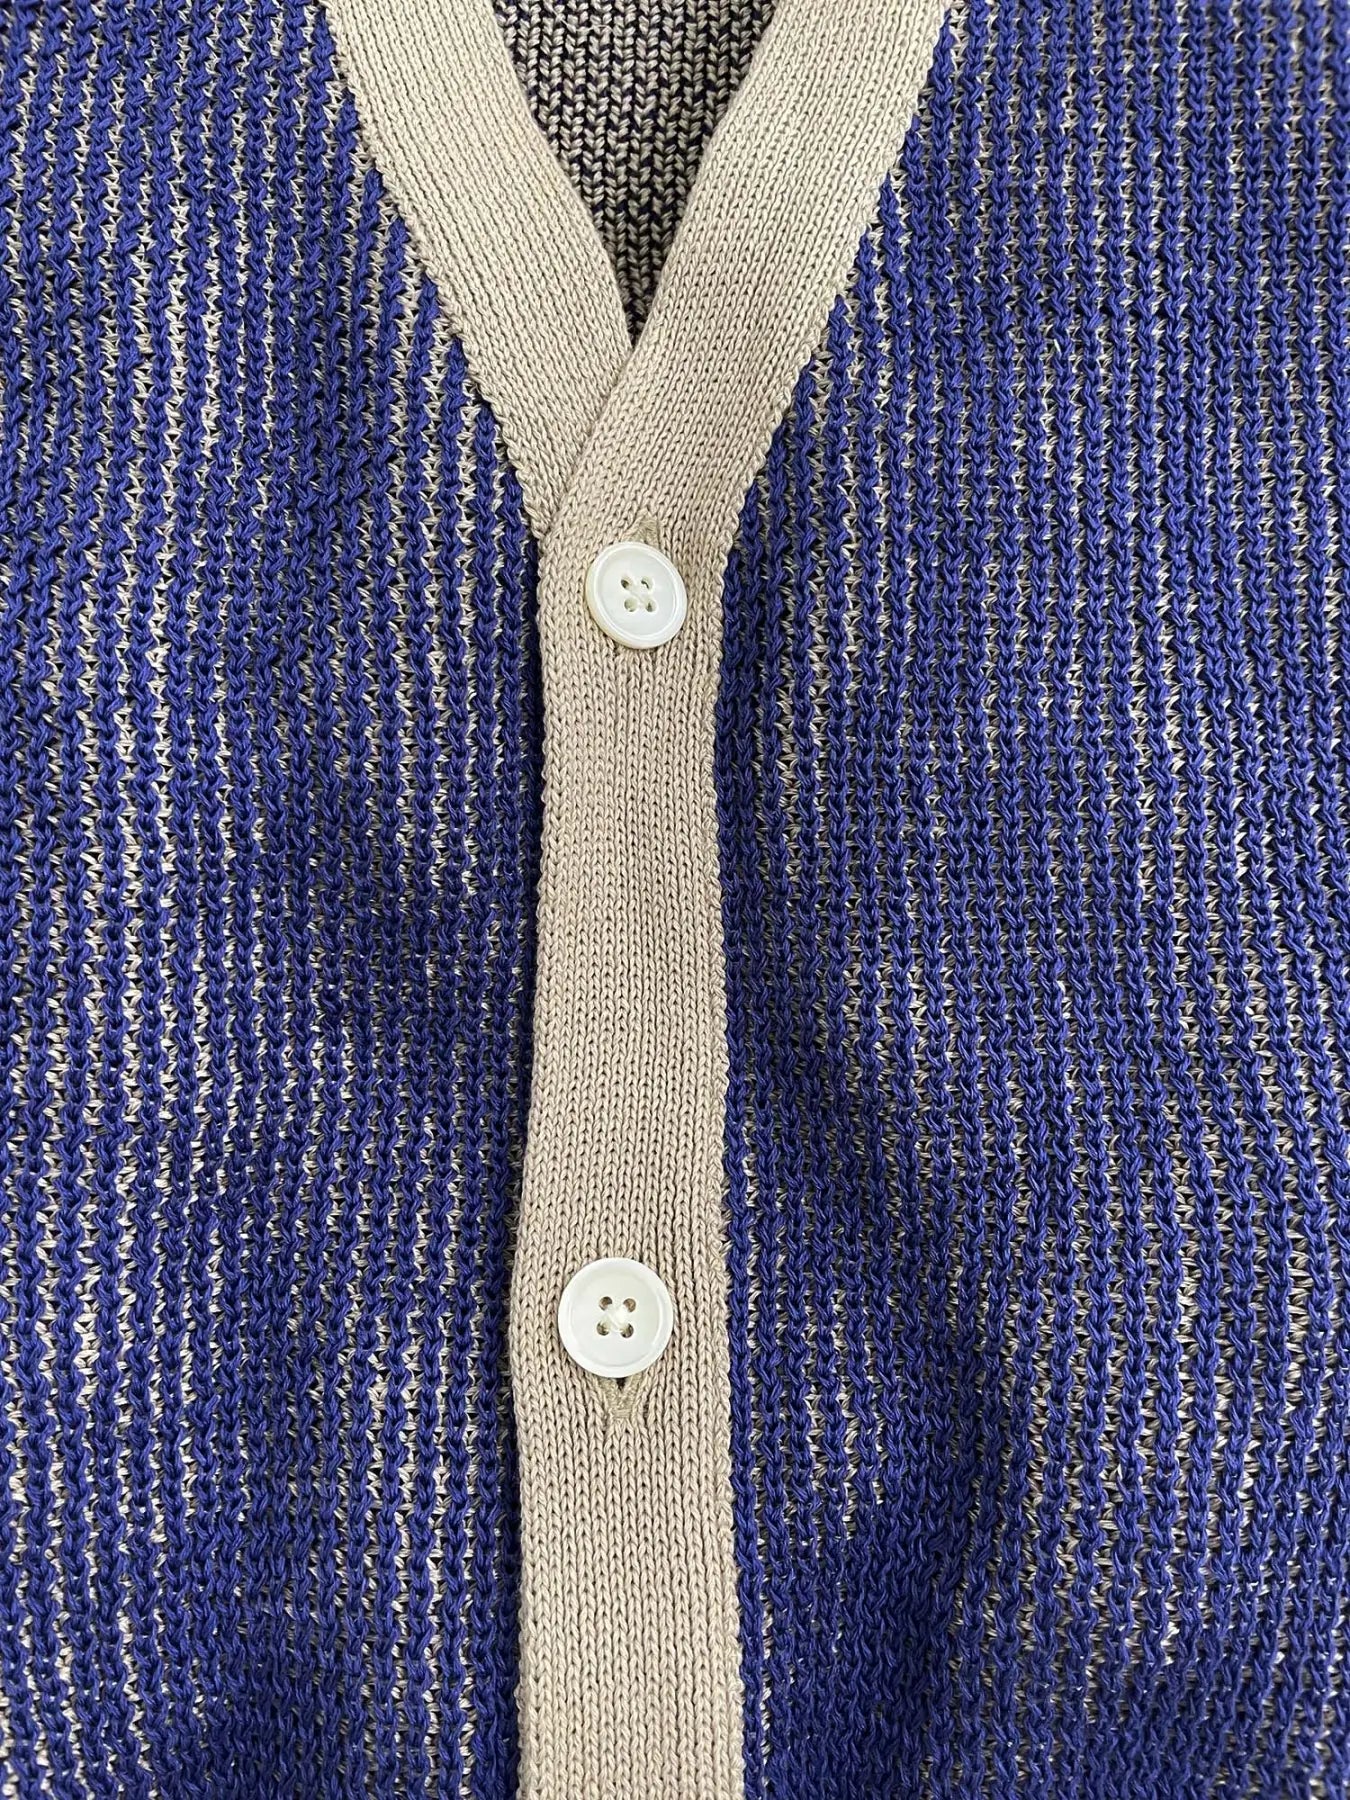 GIMA 條紋針織開襟衫 日本製造 100% 棉 場合 [100-145cm]